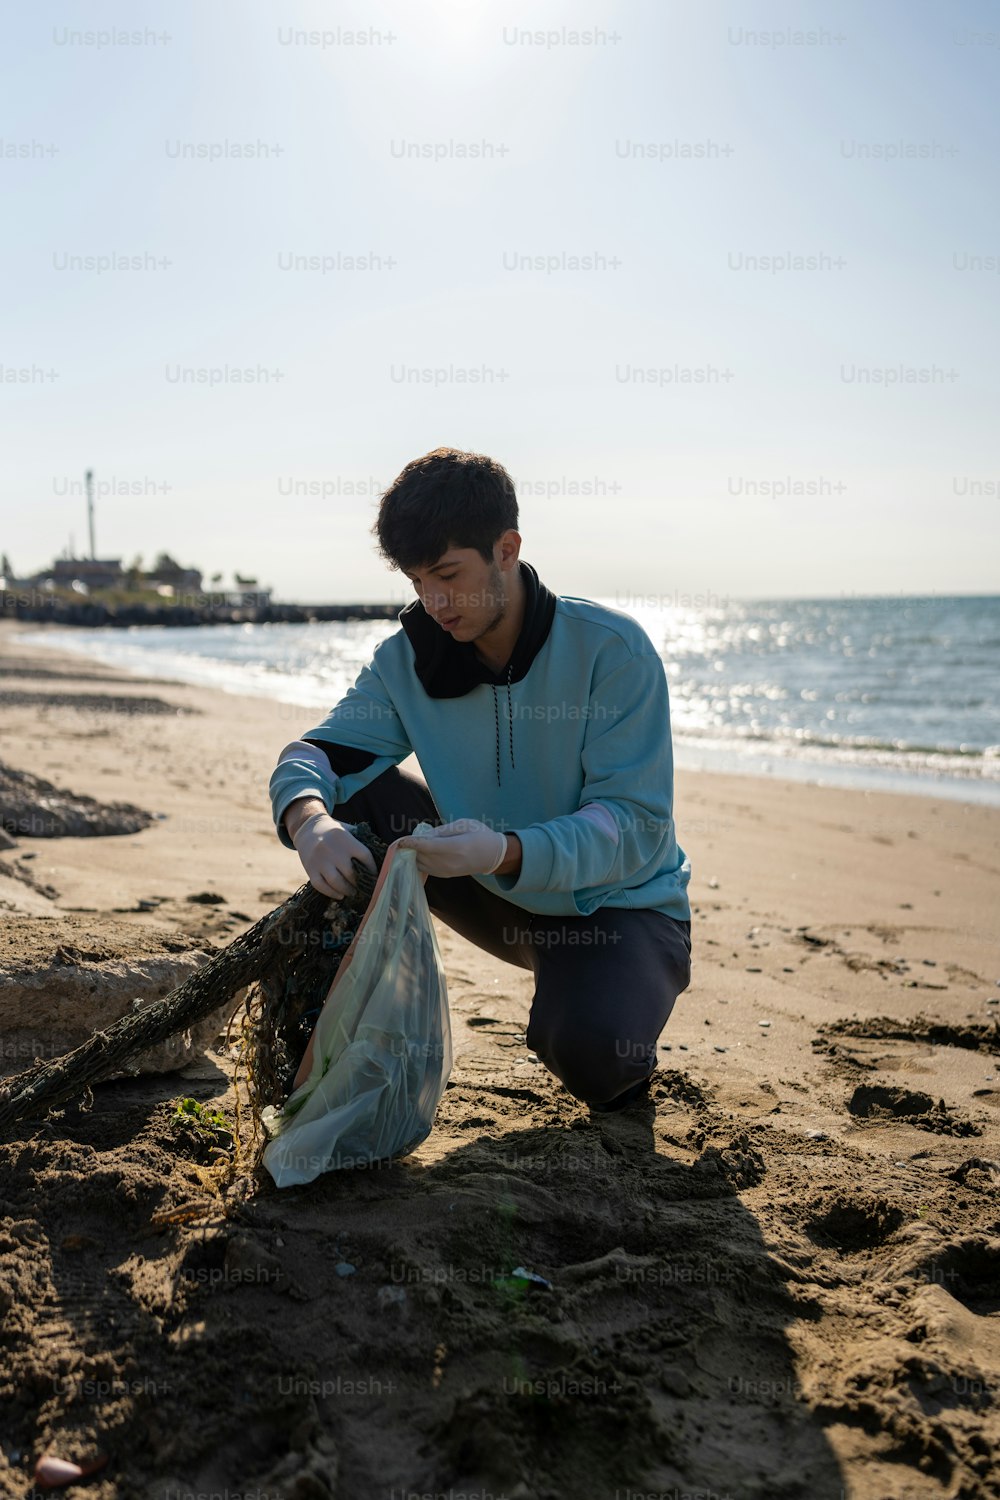 Un hombre arrodillado en una playa junto a una bolsa